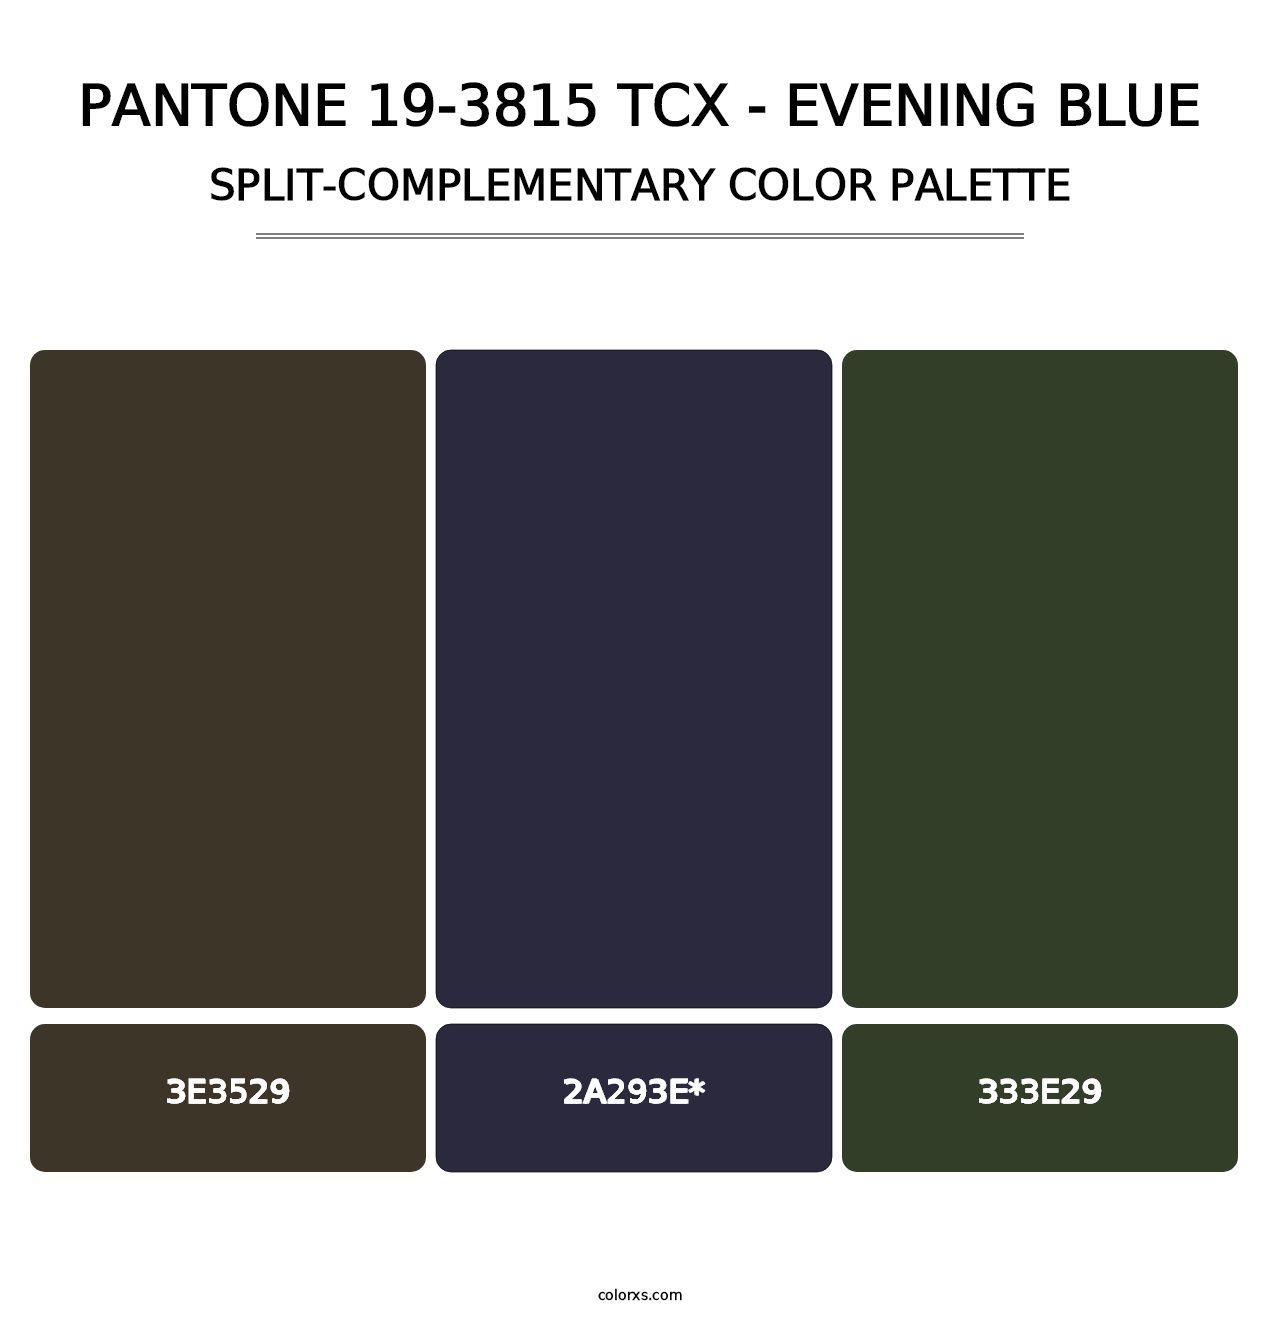 PANTONE 19-3815 TCX - Evening Blue - Split-Complementary Color Palette